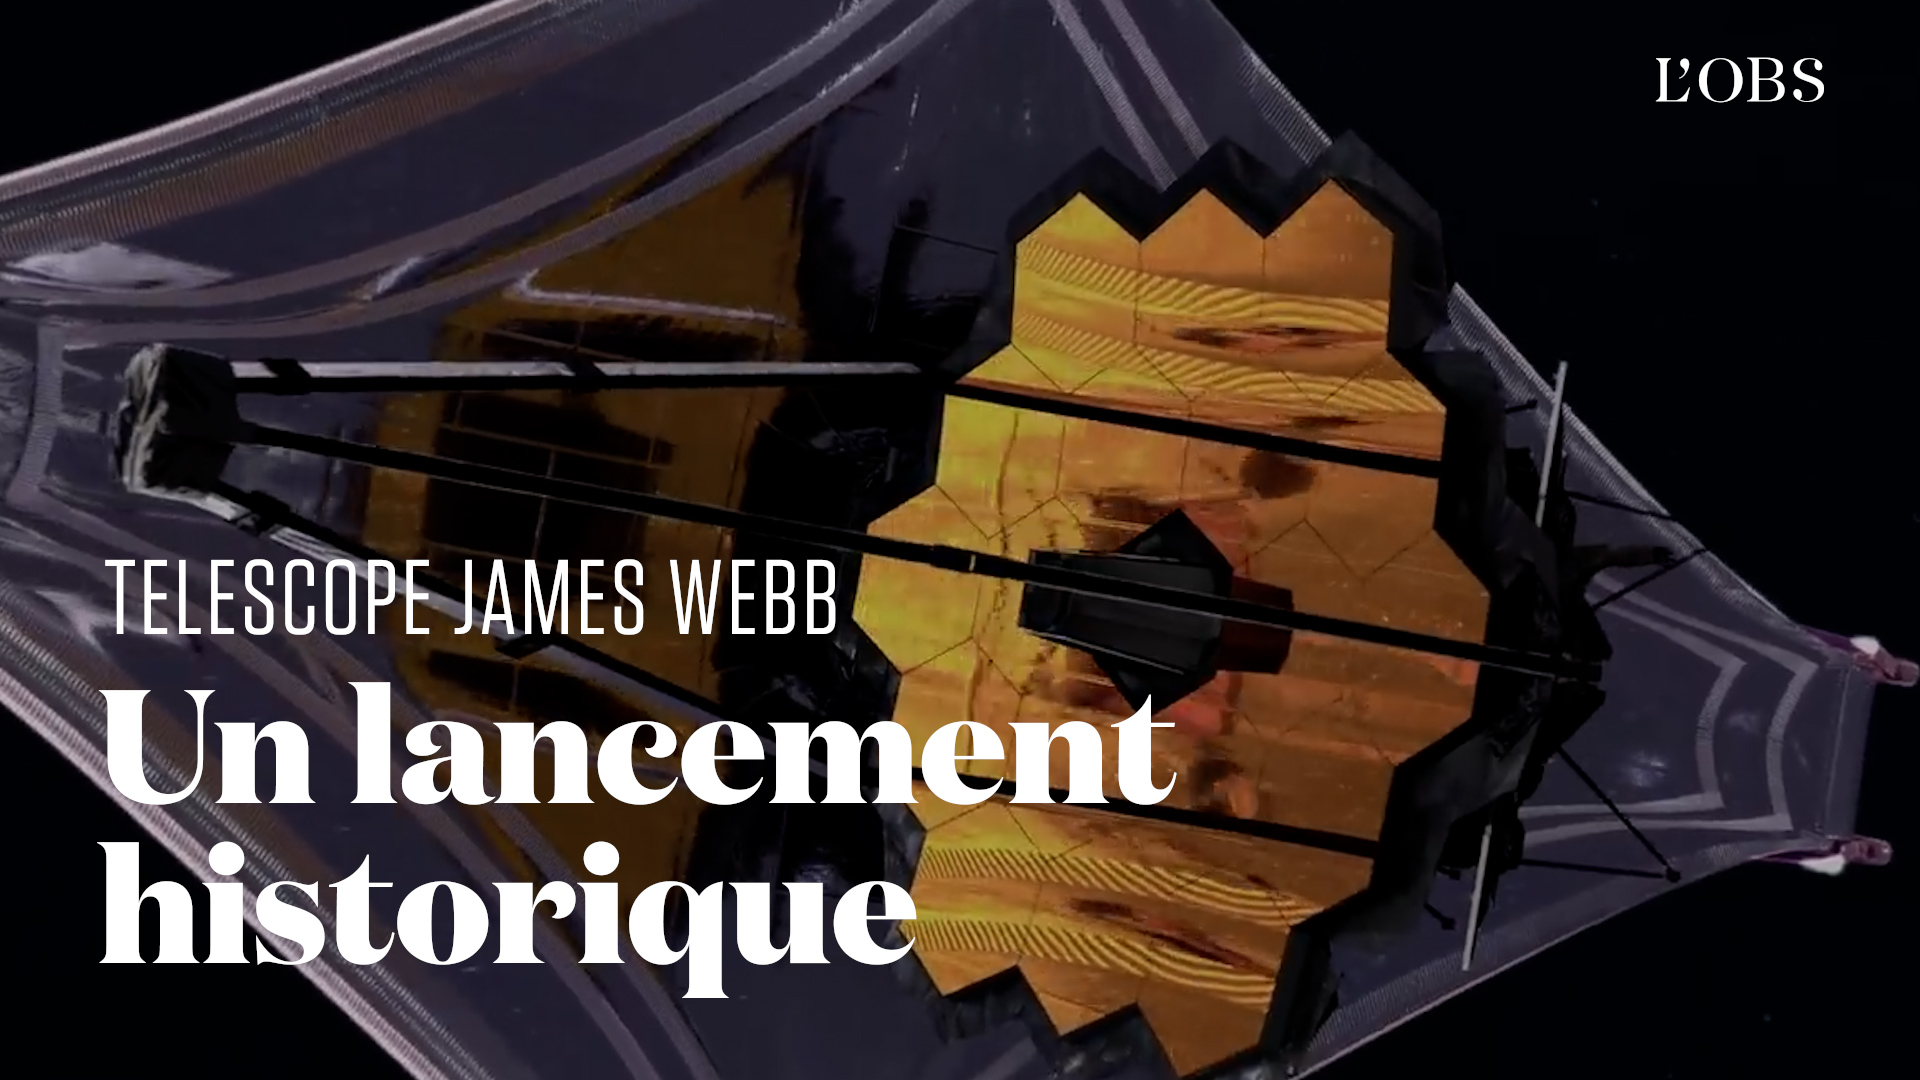 La Nasa publie des images du télescope James Webb à la veille de son lancement historique